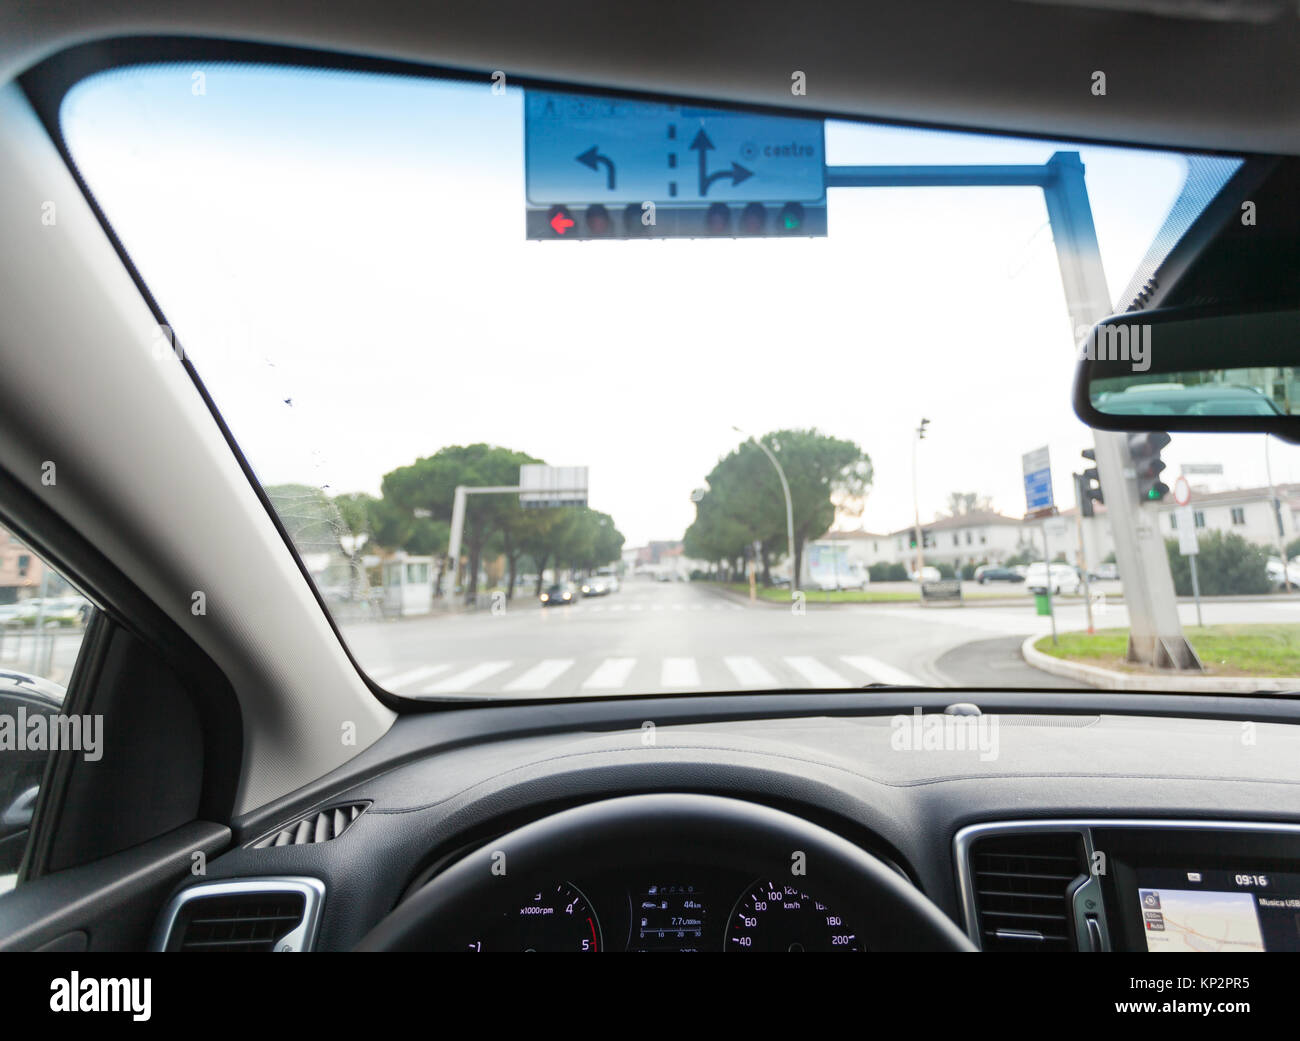 Vue depuis l'intérieur d'une voiture sur une partie du tableau de bord avec une unité de navigation. Banque D'Images